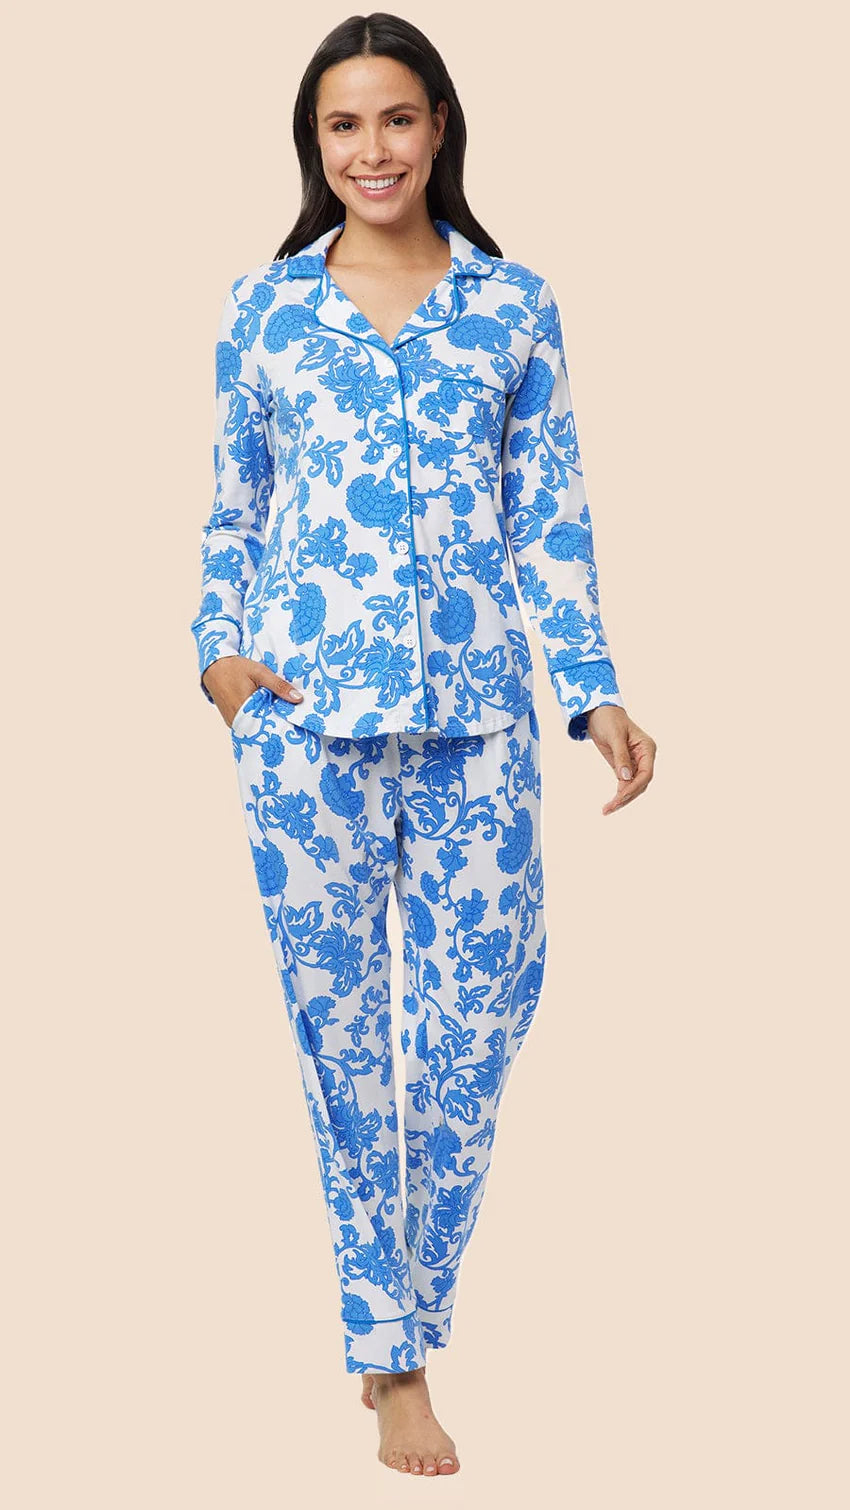 Luxury Pajamas - 2 Styles